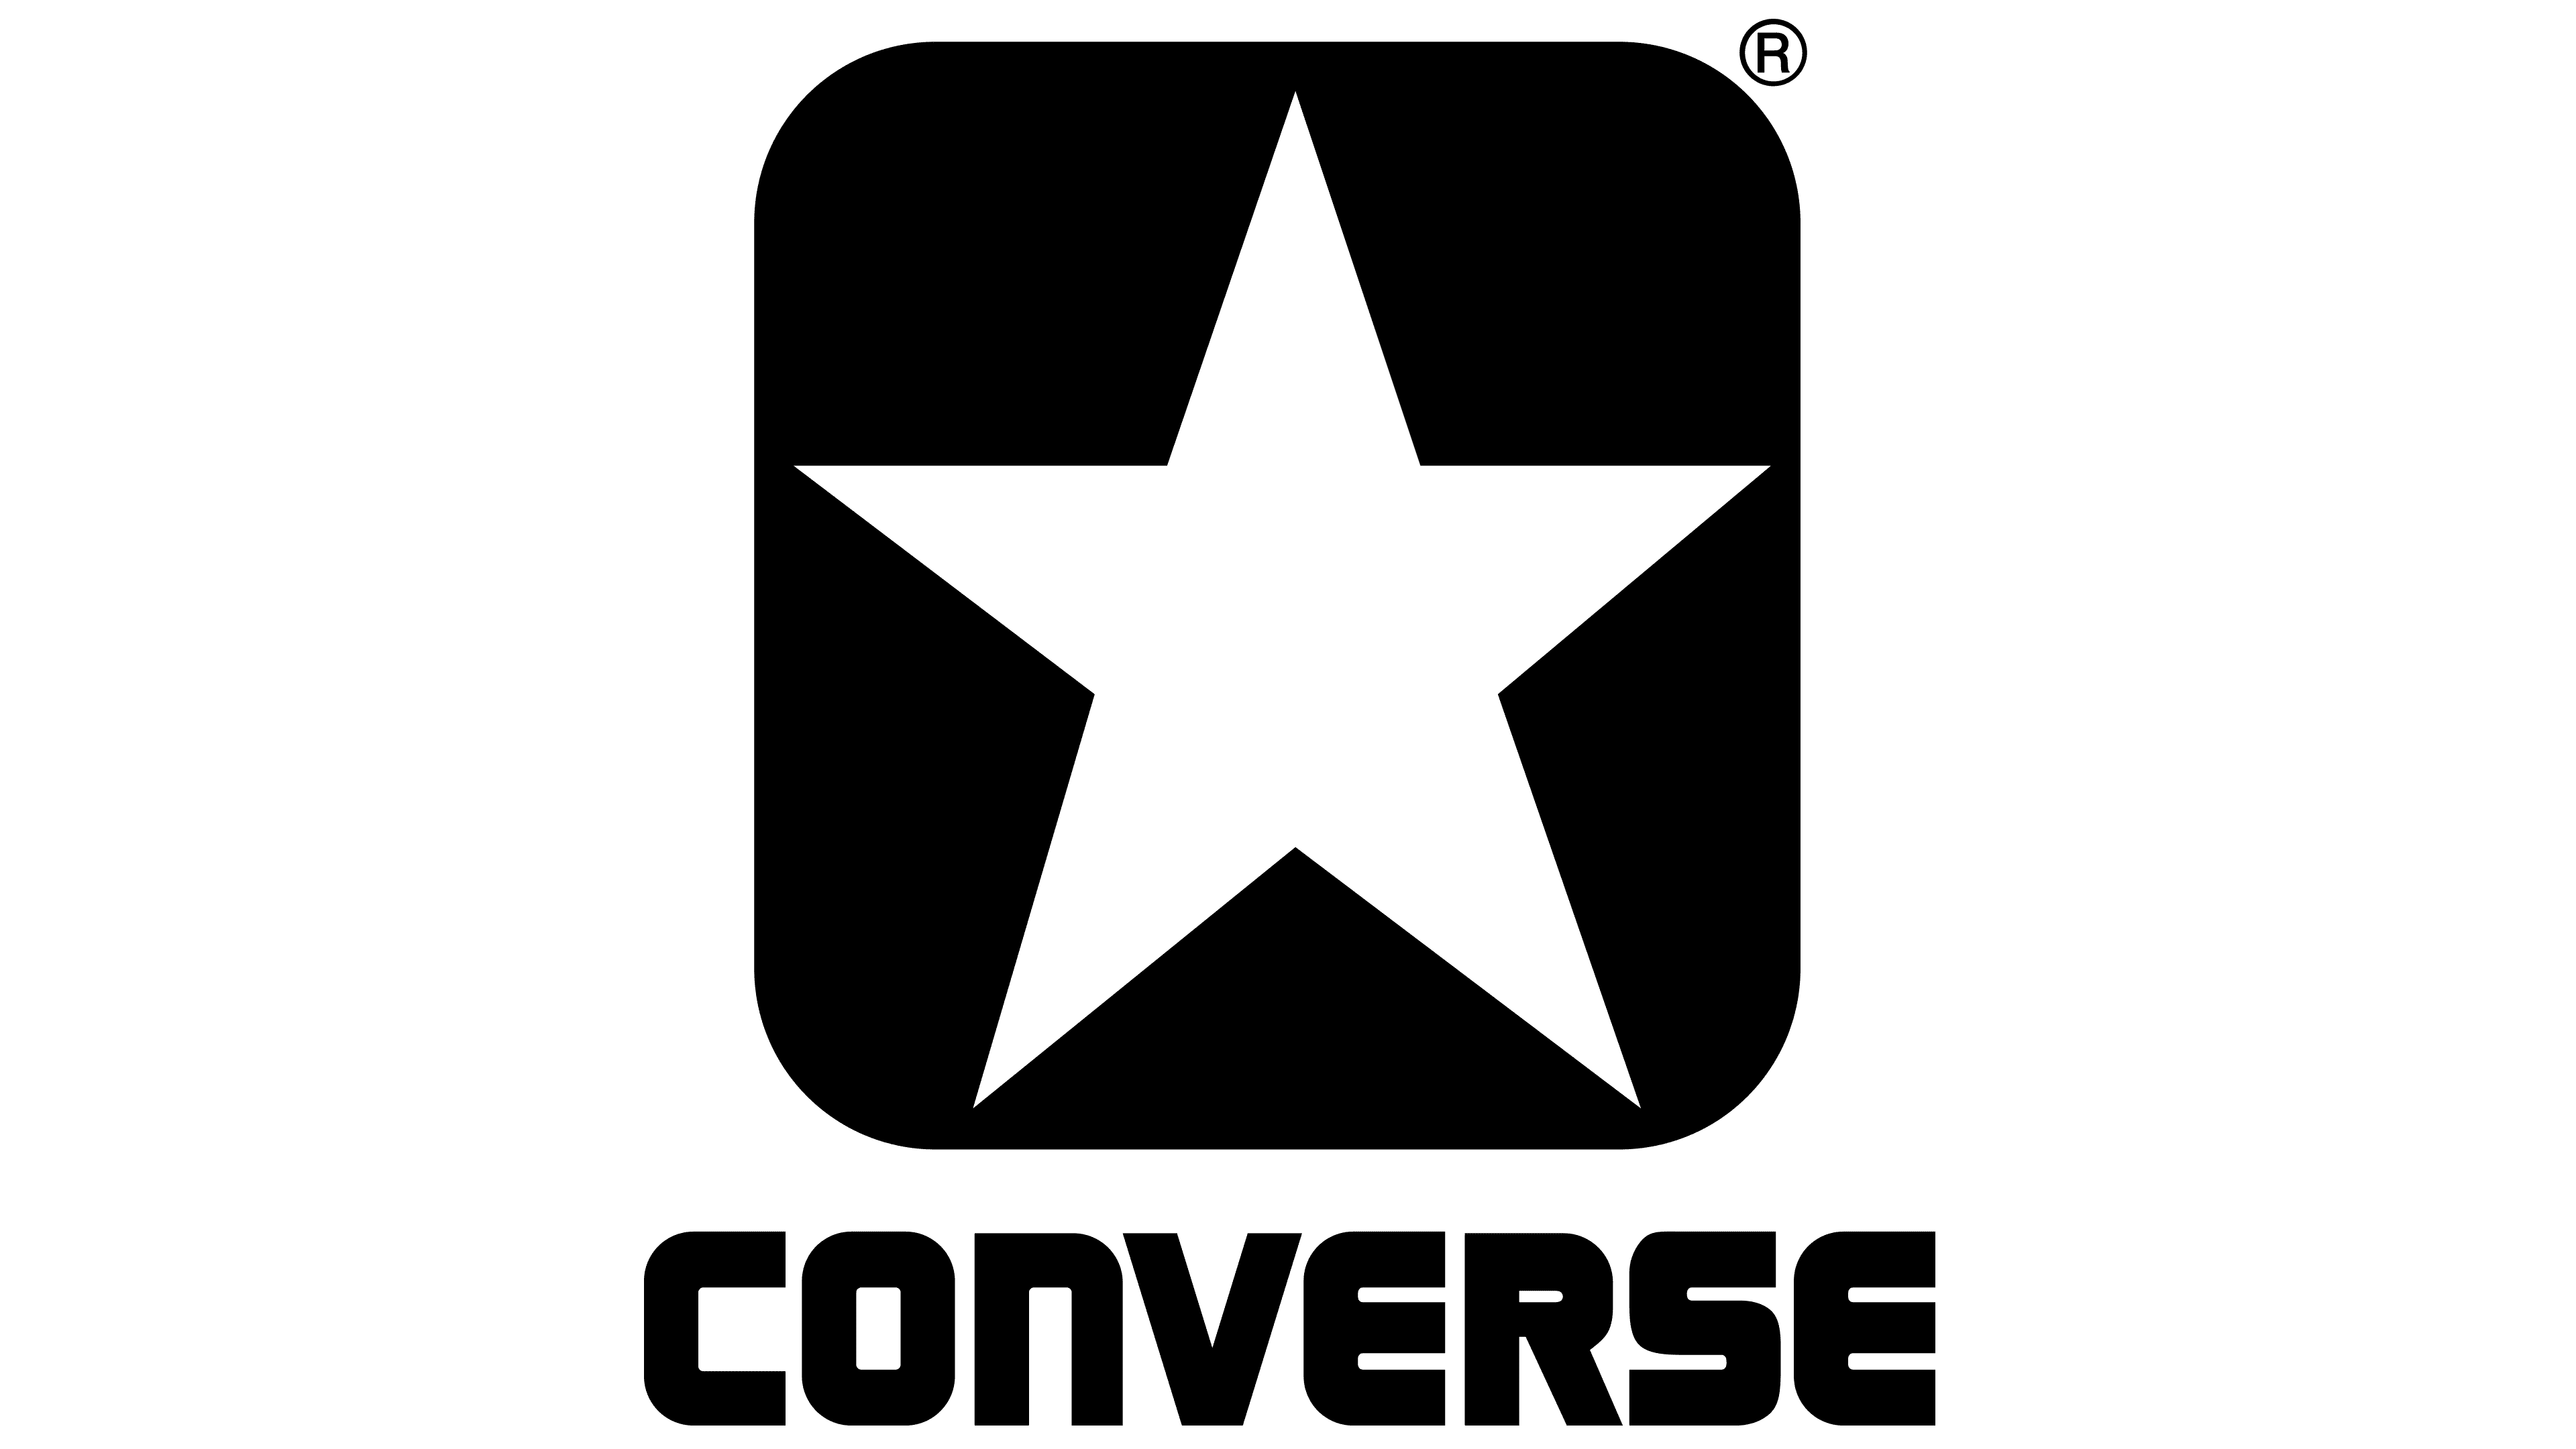 converse logo 2017